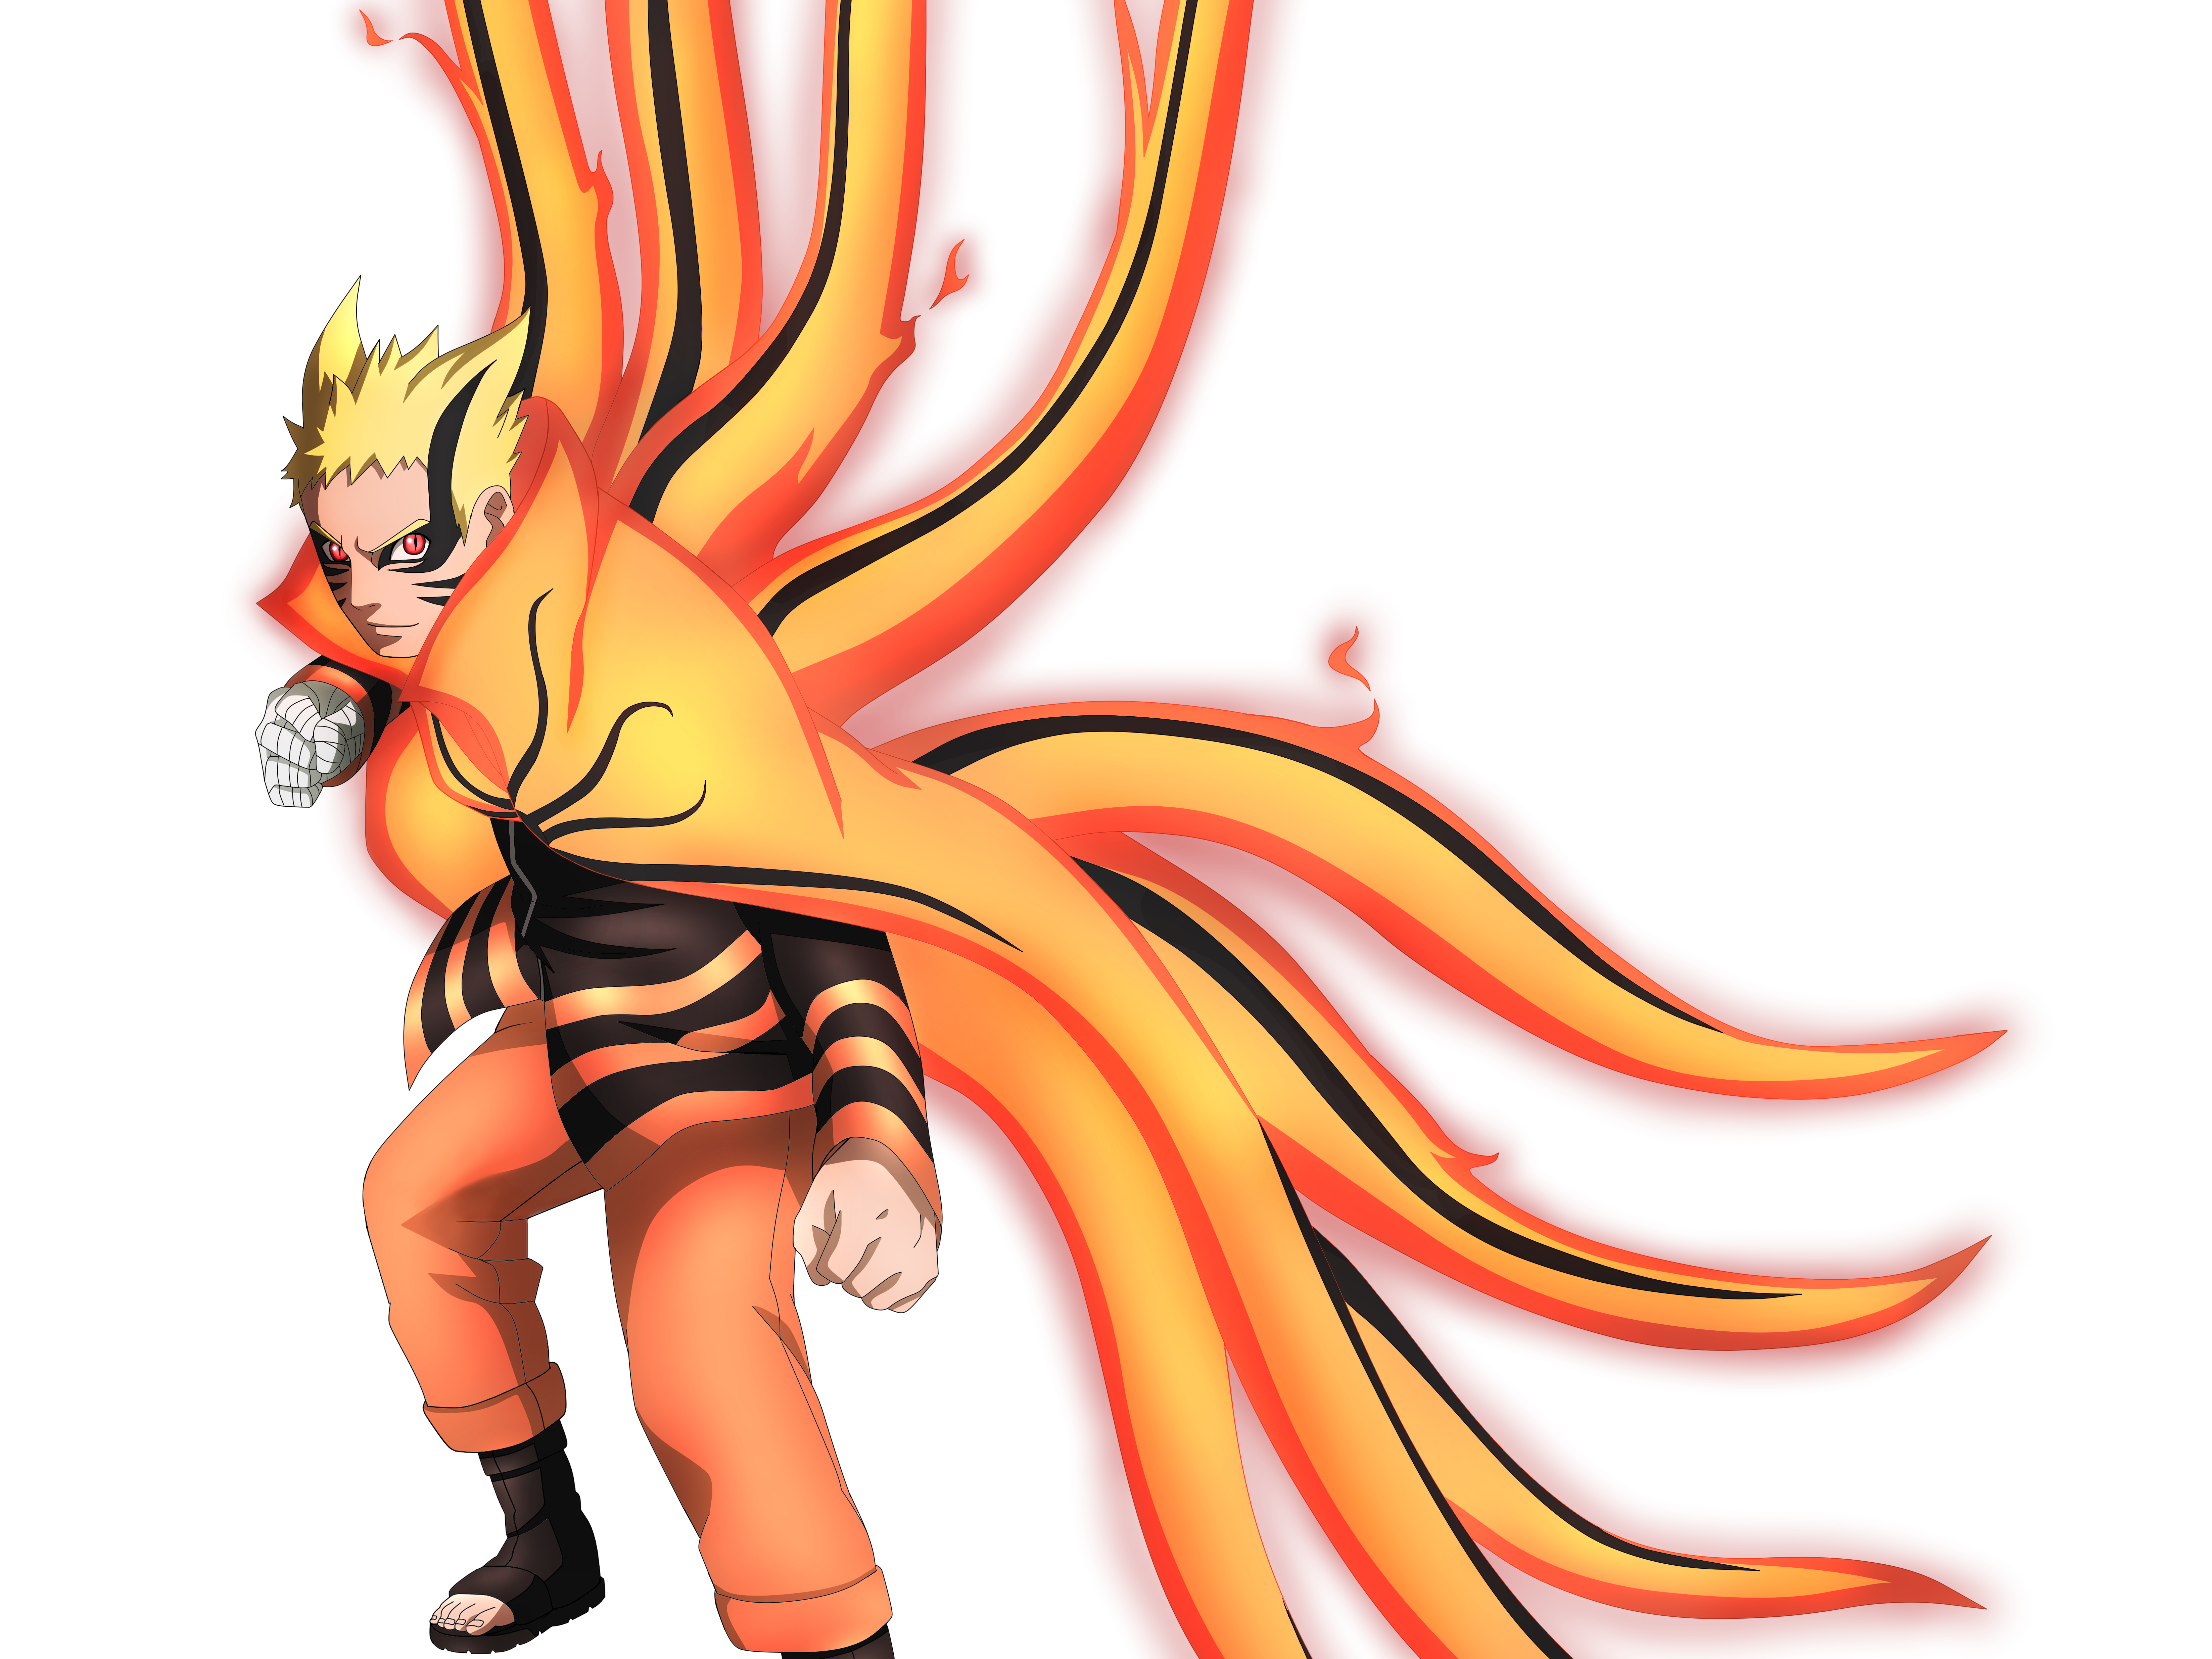 Bạn là một fan hâm mộ của Naruro và muốn tìm kiếm hình nền chất lượng cao? Hãy xem ngay bức hình nền Baryon Mode Naruto 4k Ultra HD mới nhất của chúng tôi để tận hưởng một màn hình độ nét cực cao. Với chi tiết đầy sắc nét và ý nghĩa thiết thực, hình nền sẽ giúp bạn trải nghiệm Naruto một cách hoàn toàn khác biệt!